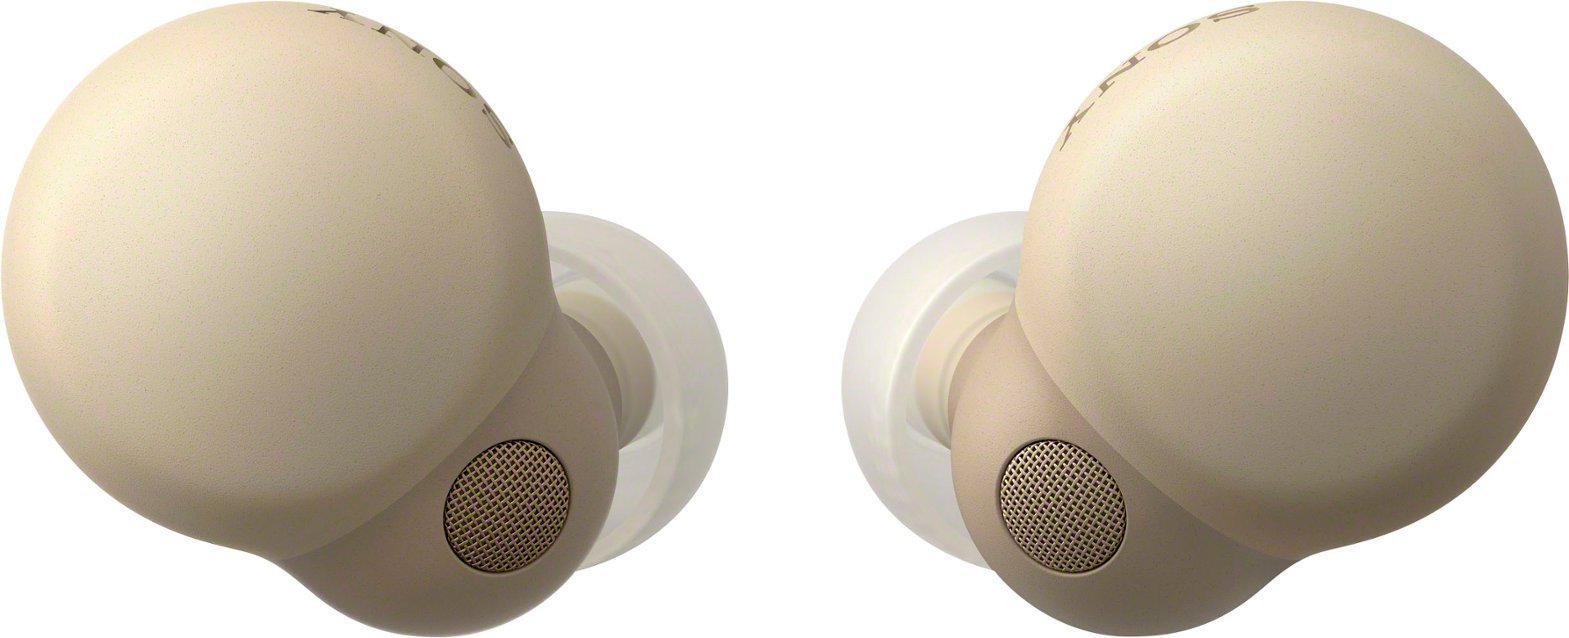 Sony - Link Buds S True Wireless Noise Canceling Earbuds - Desert Sand-Tan